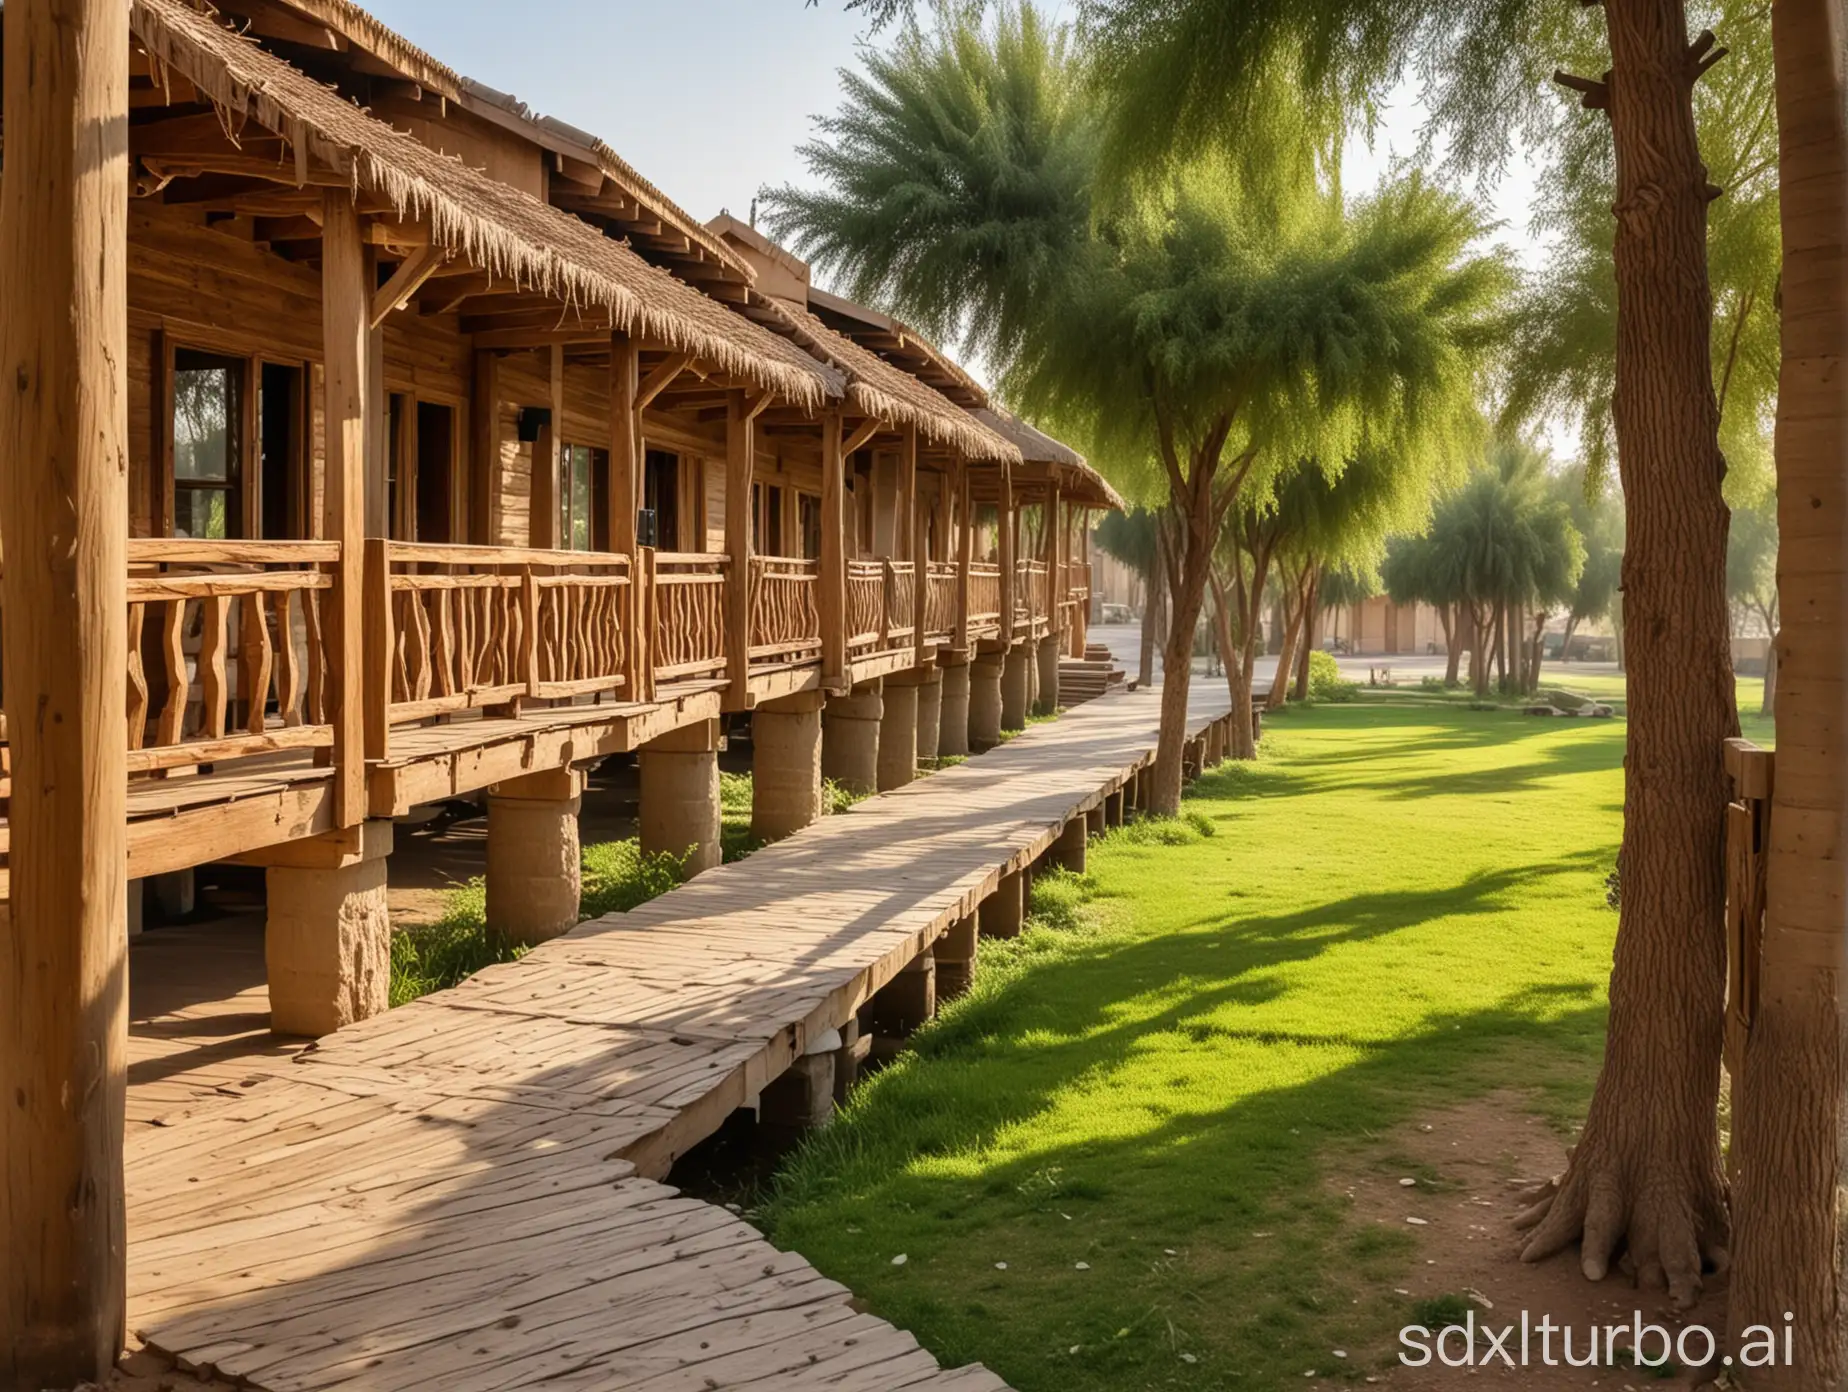 Wooden-Chalet-Resort-Amidst-Lush-Landscape-in-Baghdad